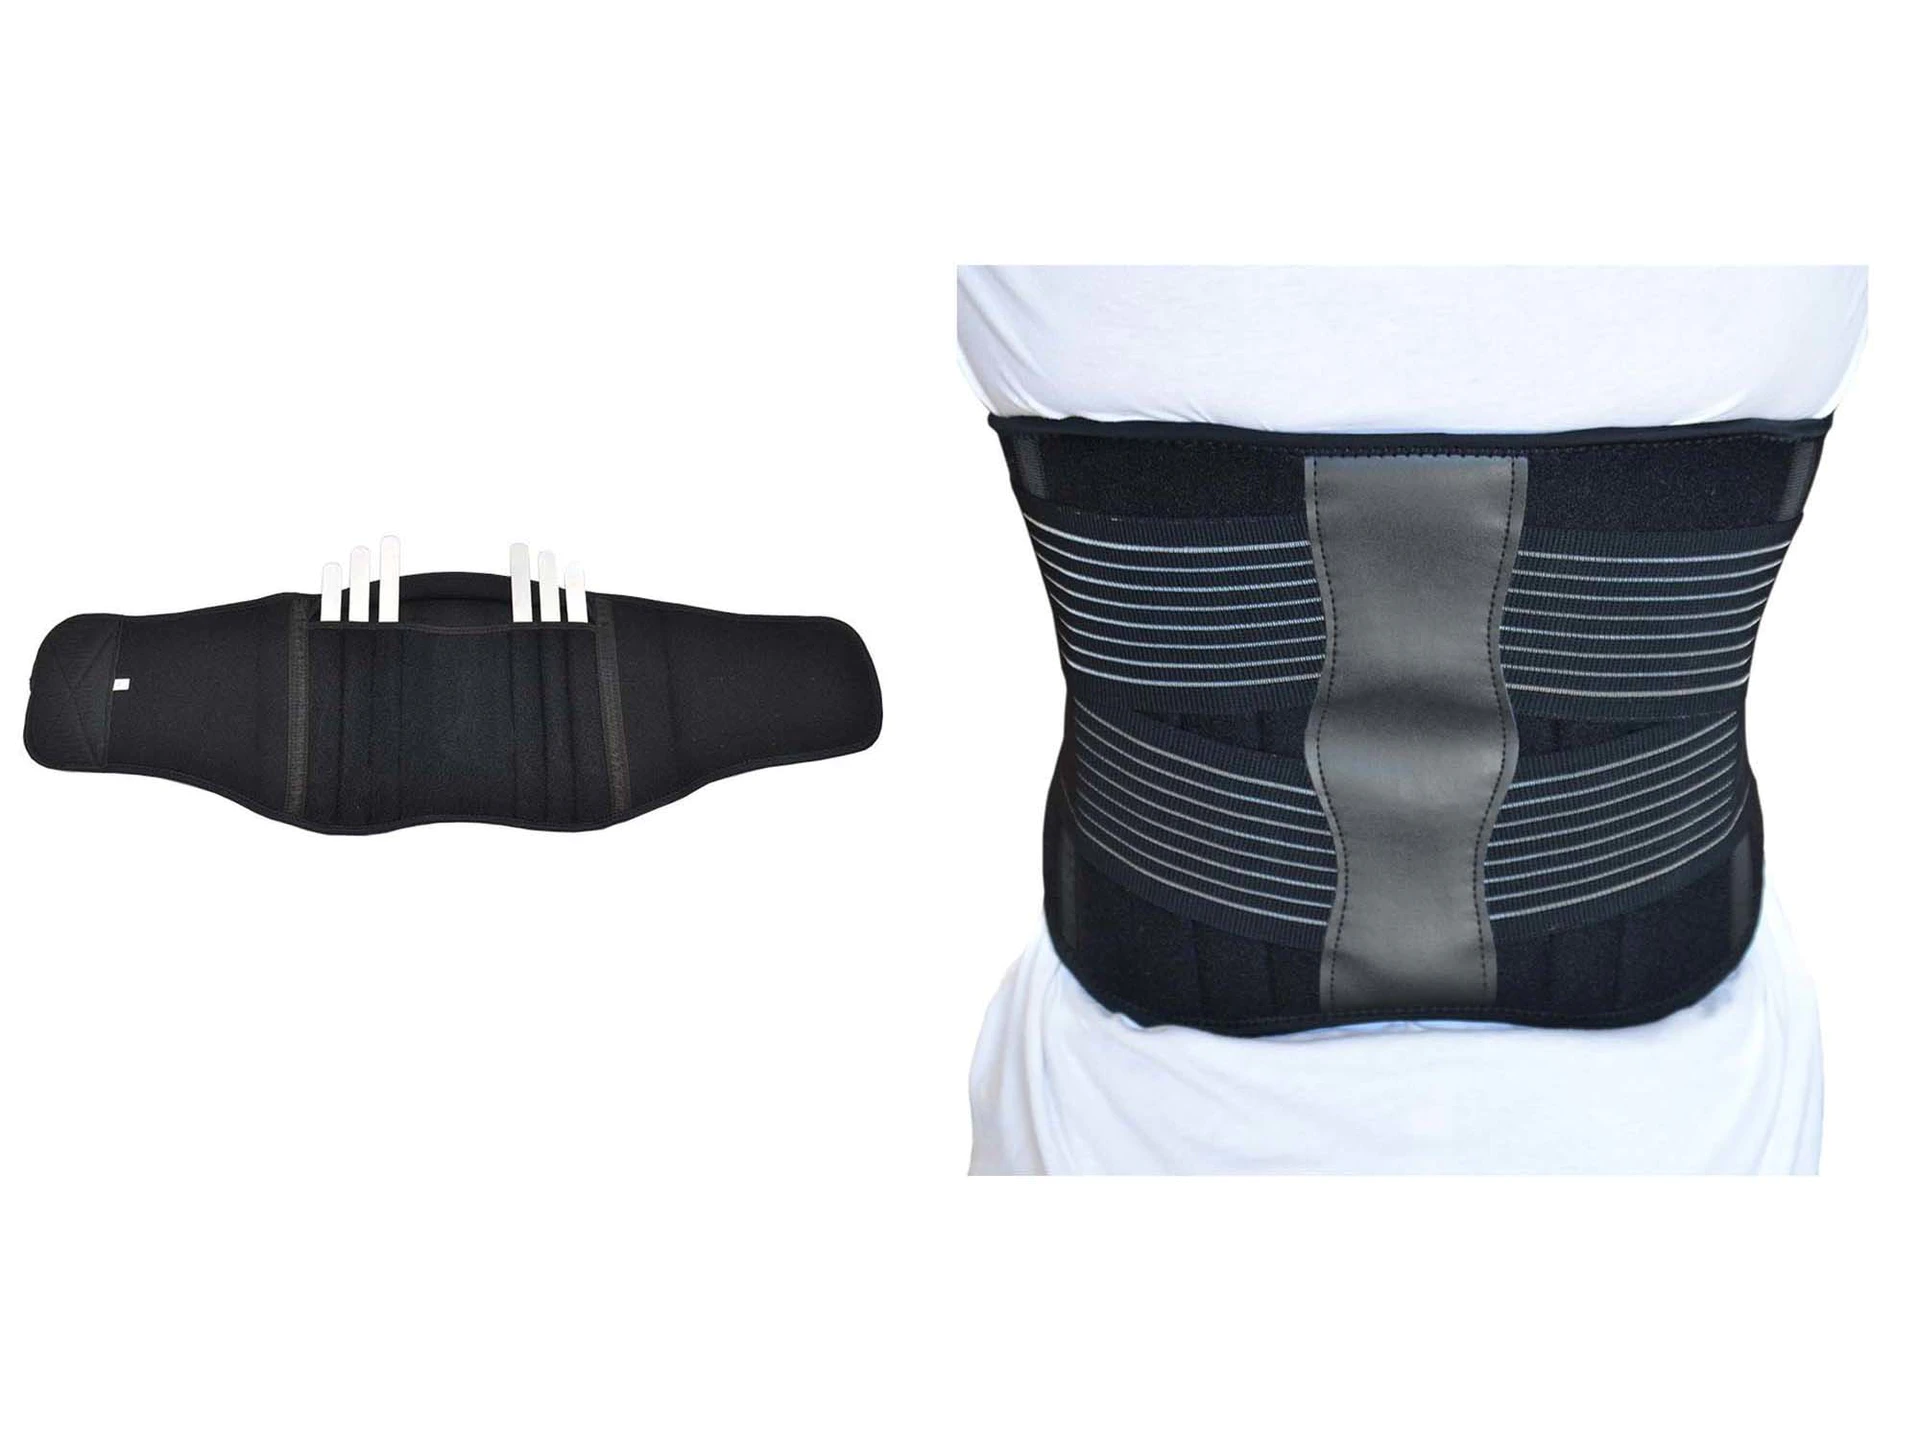 compression support sport trainer belt for basketball